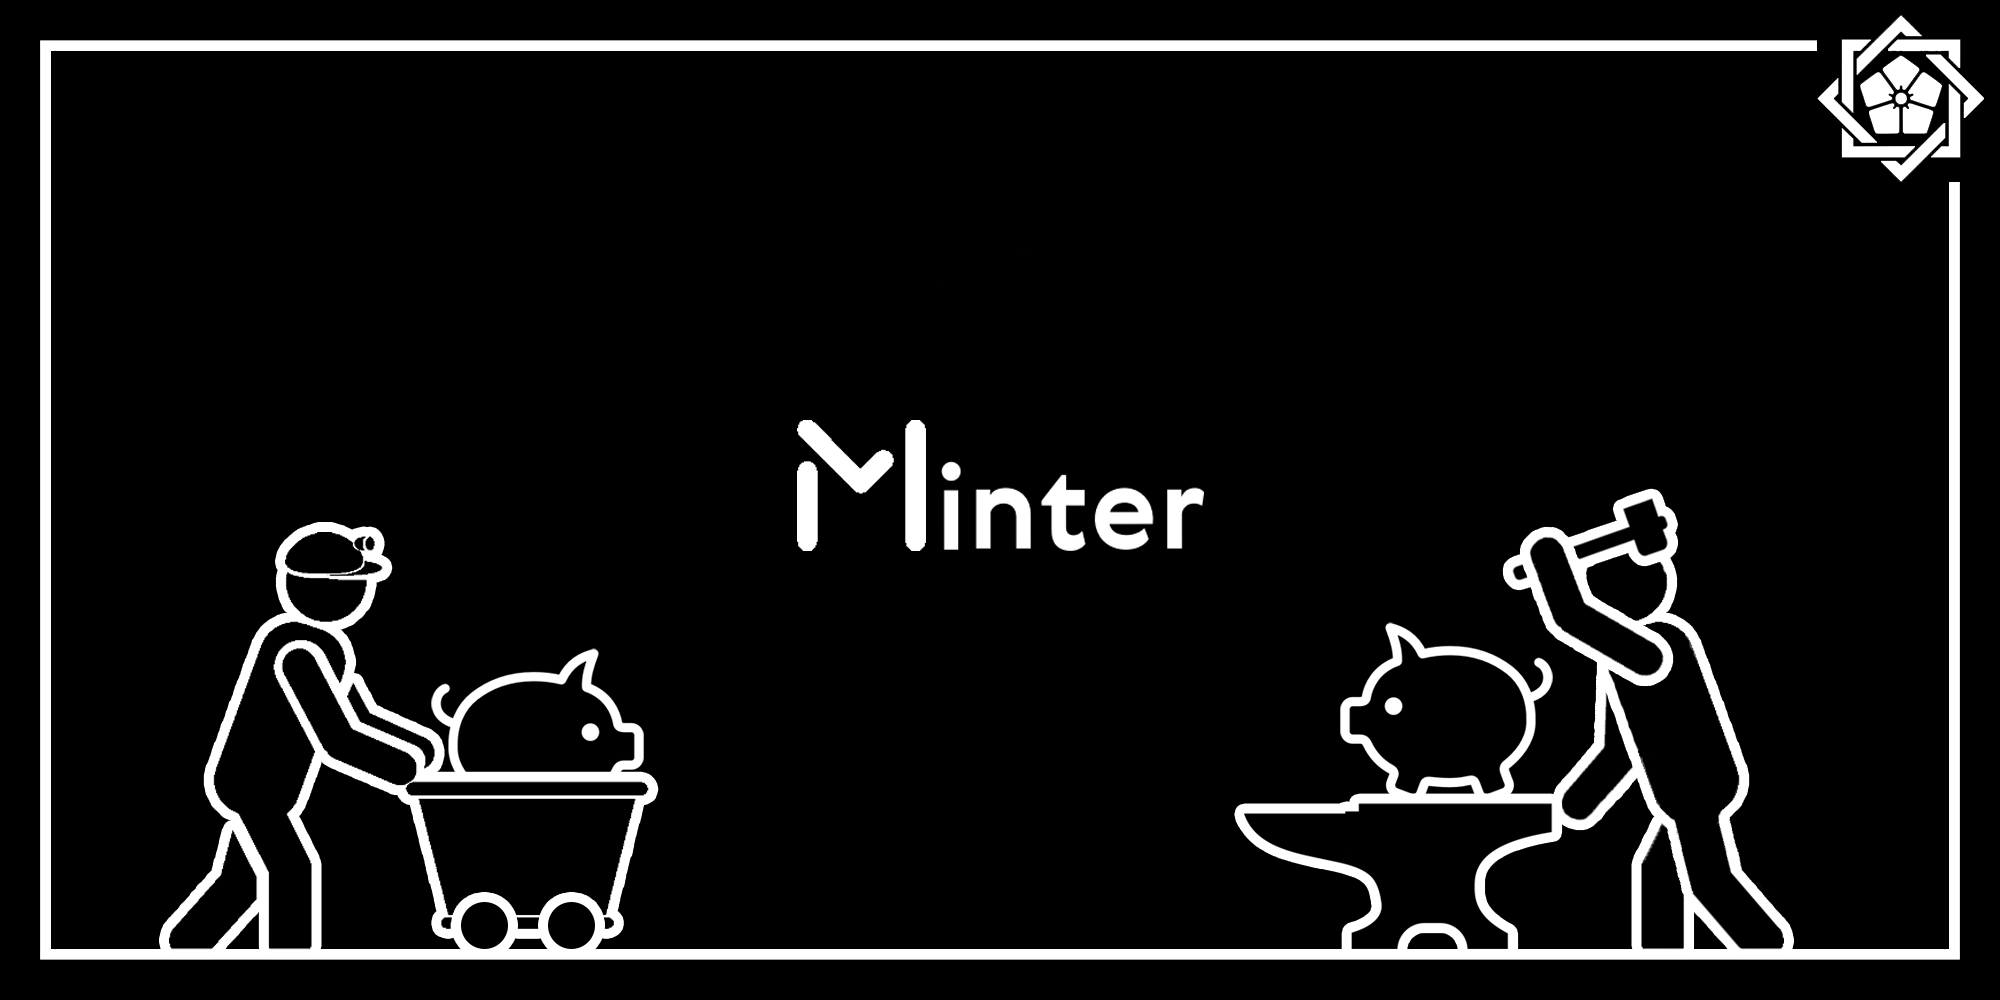 Minter - новый формат цифровых отношений между людьми.